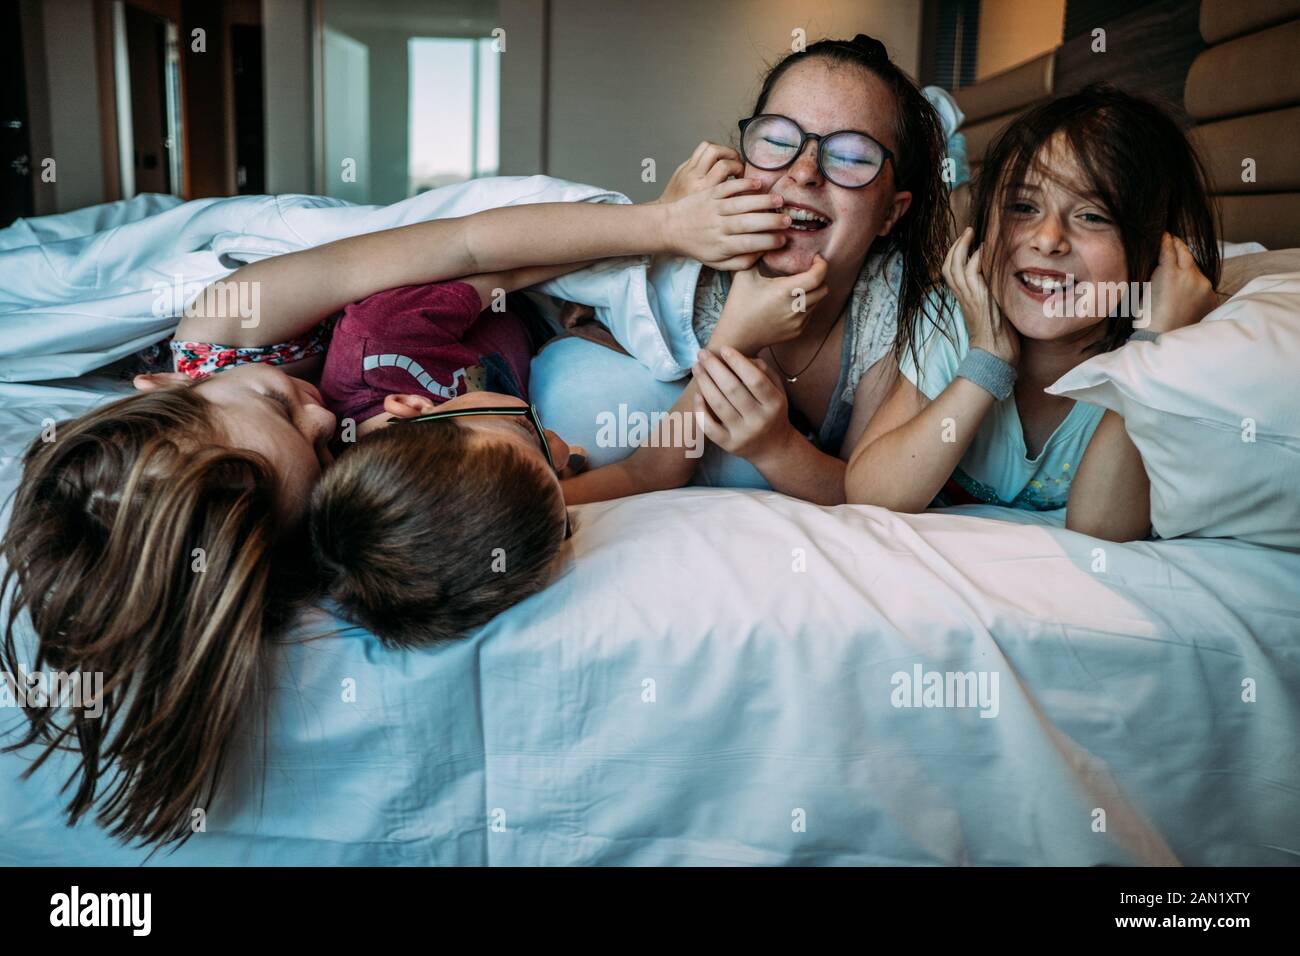 les jeunes enfants jouent sur le lit de l'hôtel pendant leurs vacances Banque D'Images